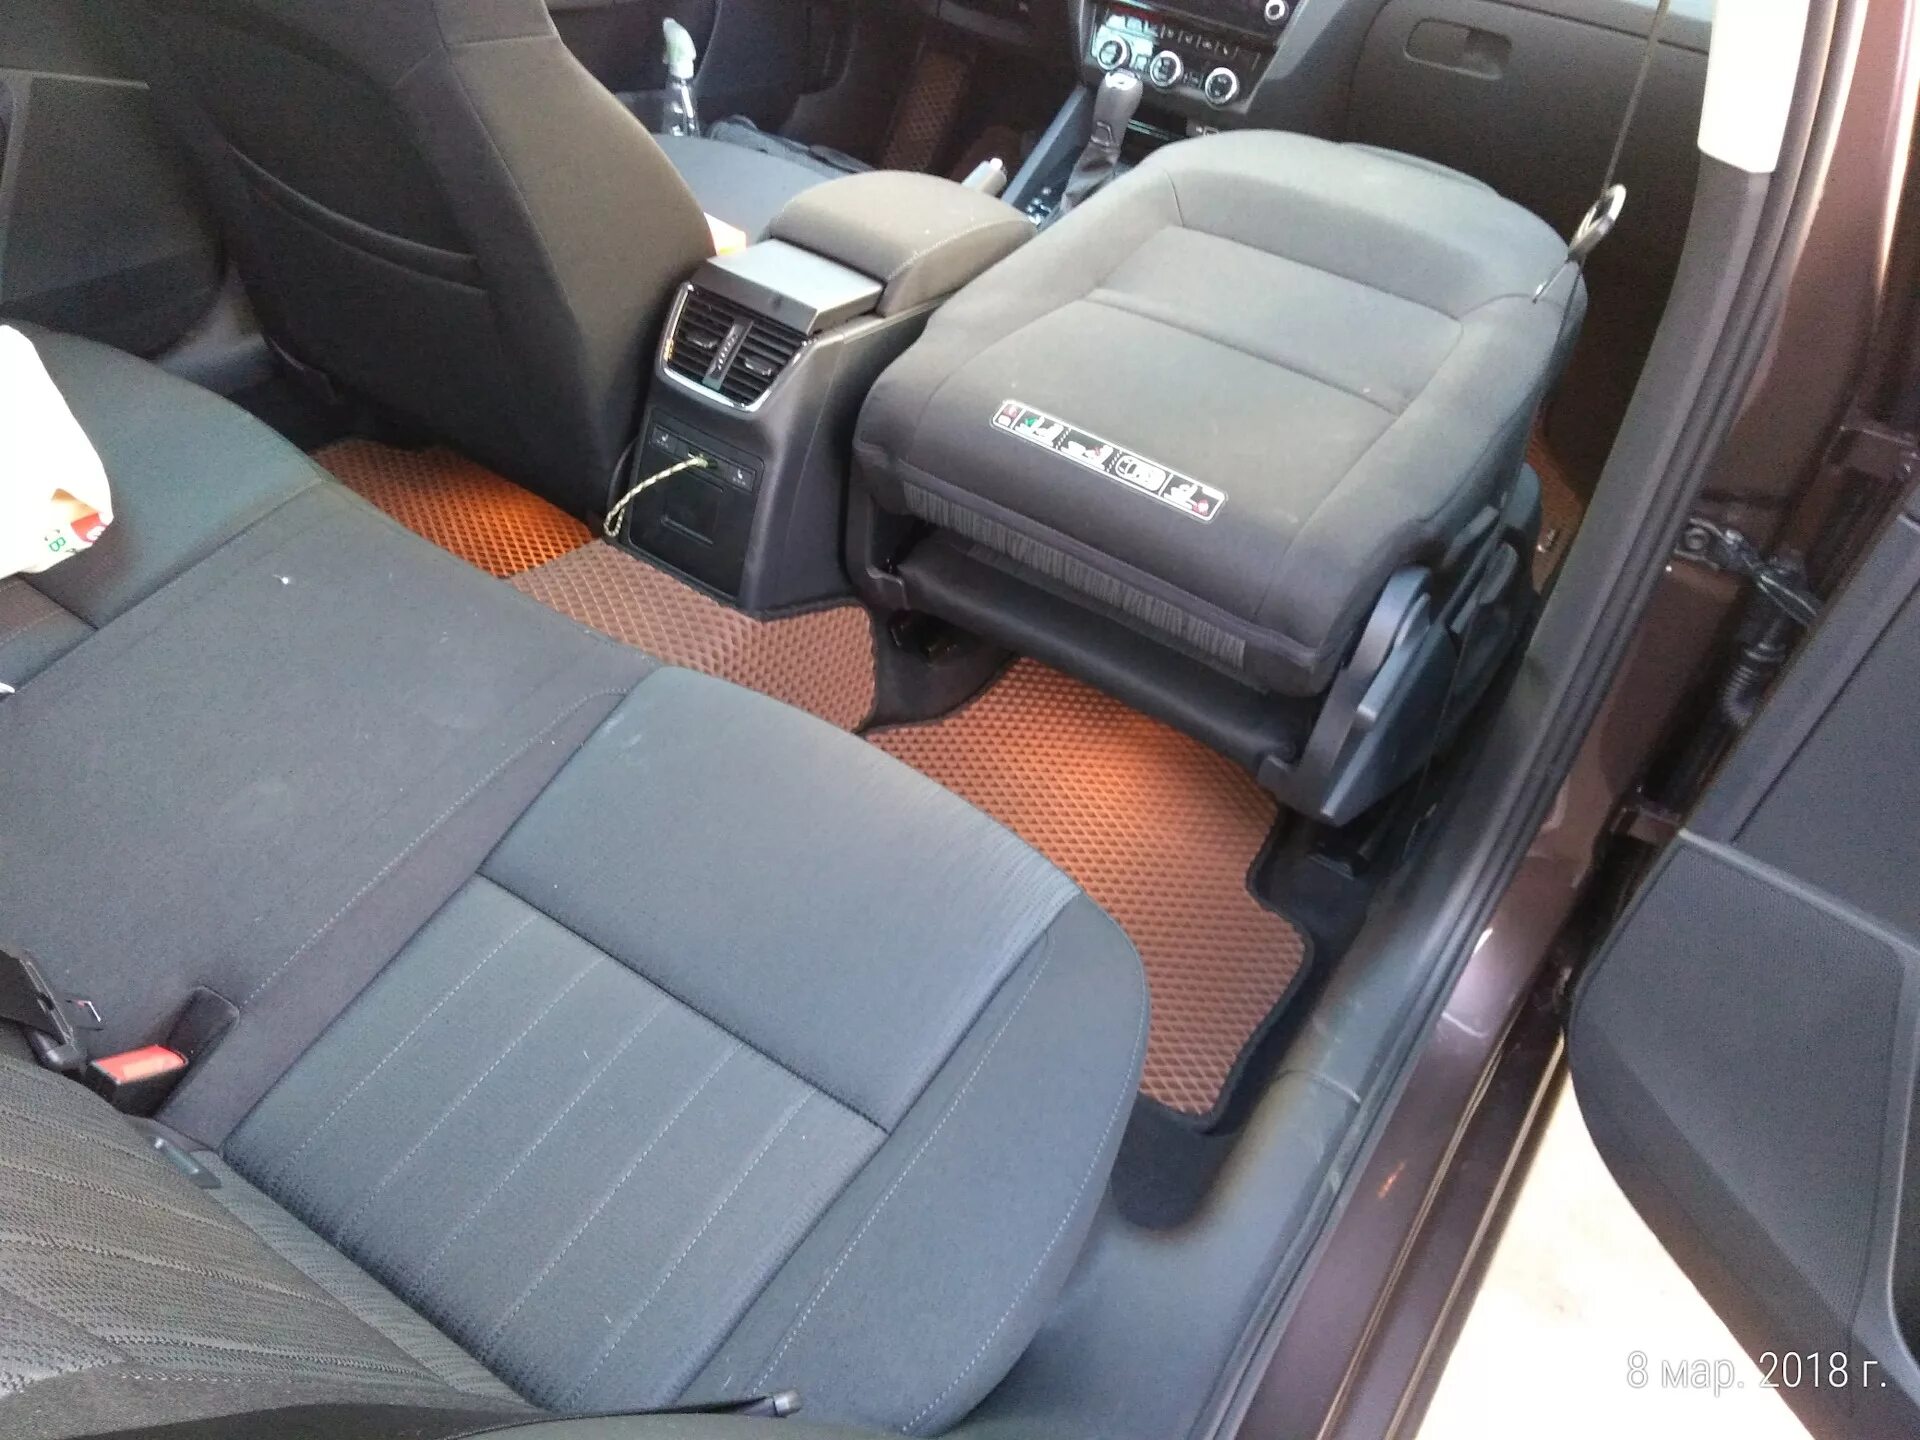 Škoda Superb переднее сиденье. Складывающееся переднее пассажирское сиденье Skoda Yeti. Сложить переднее сиденье